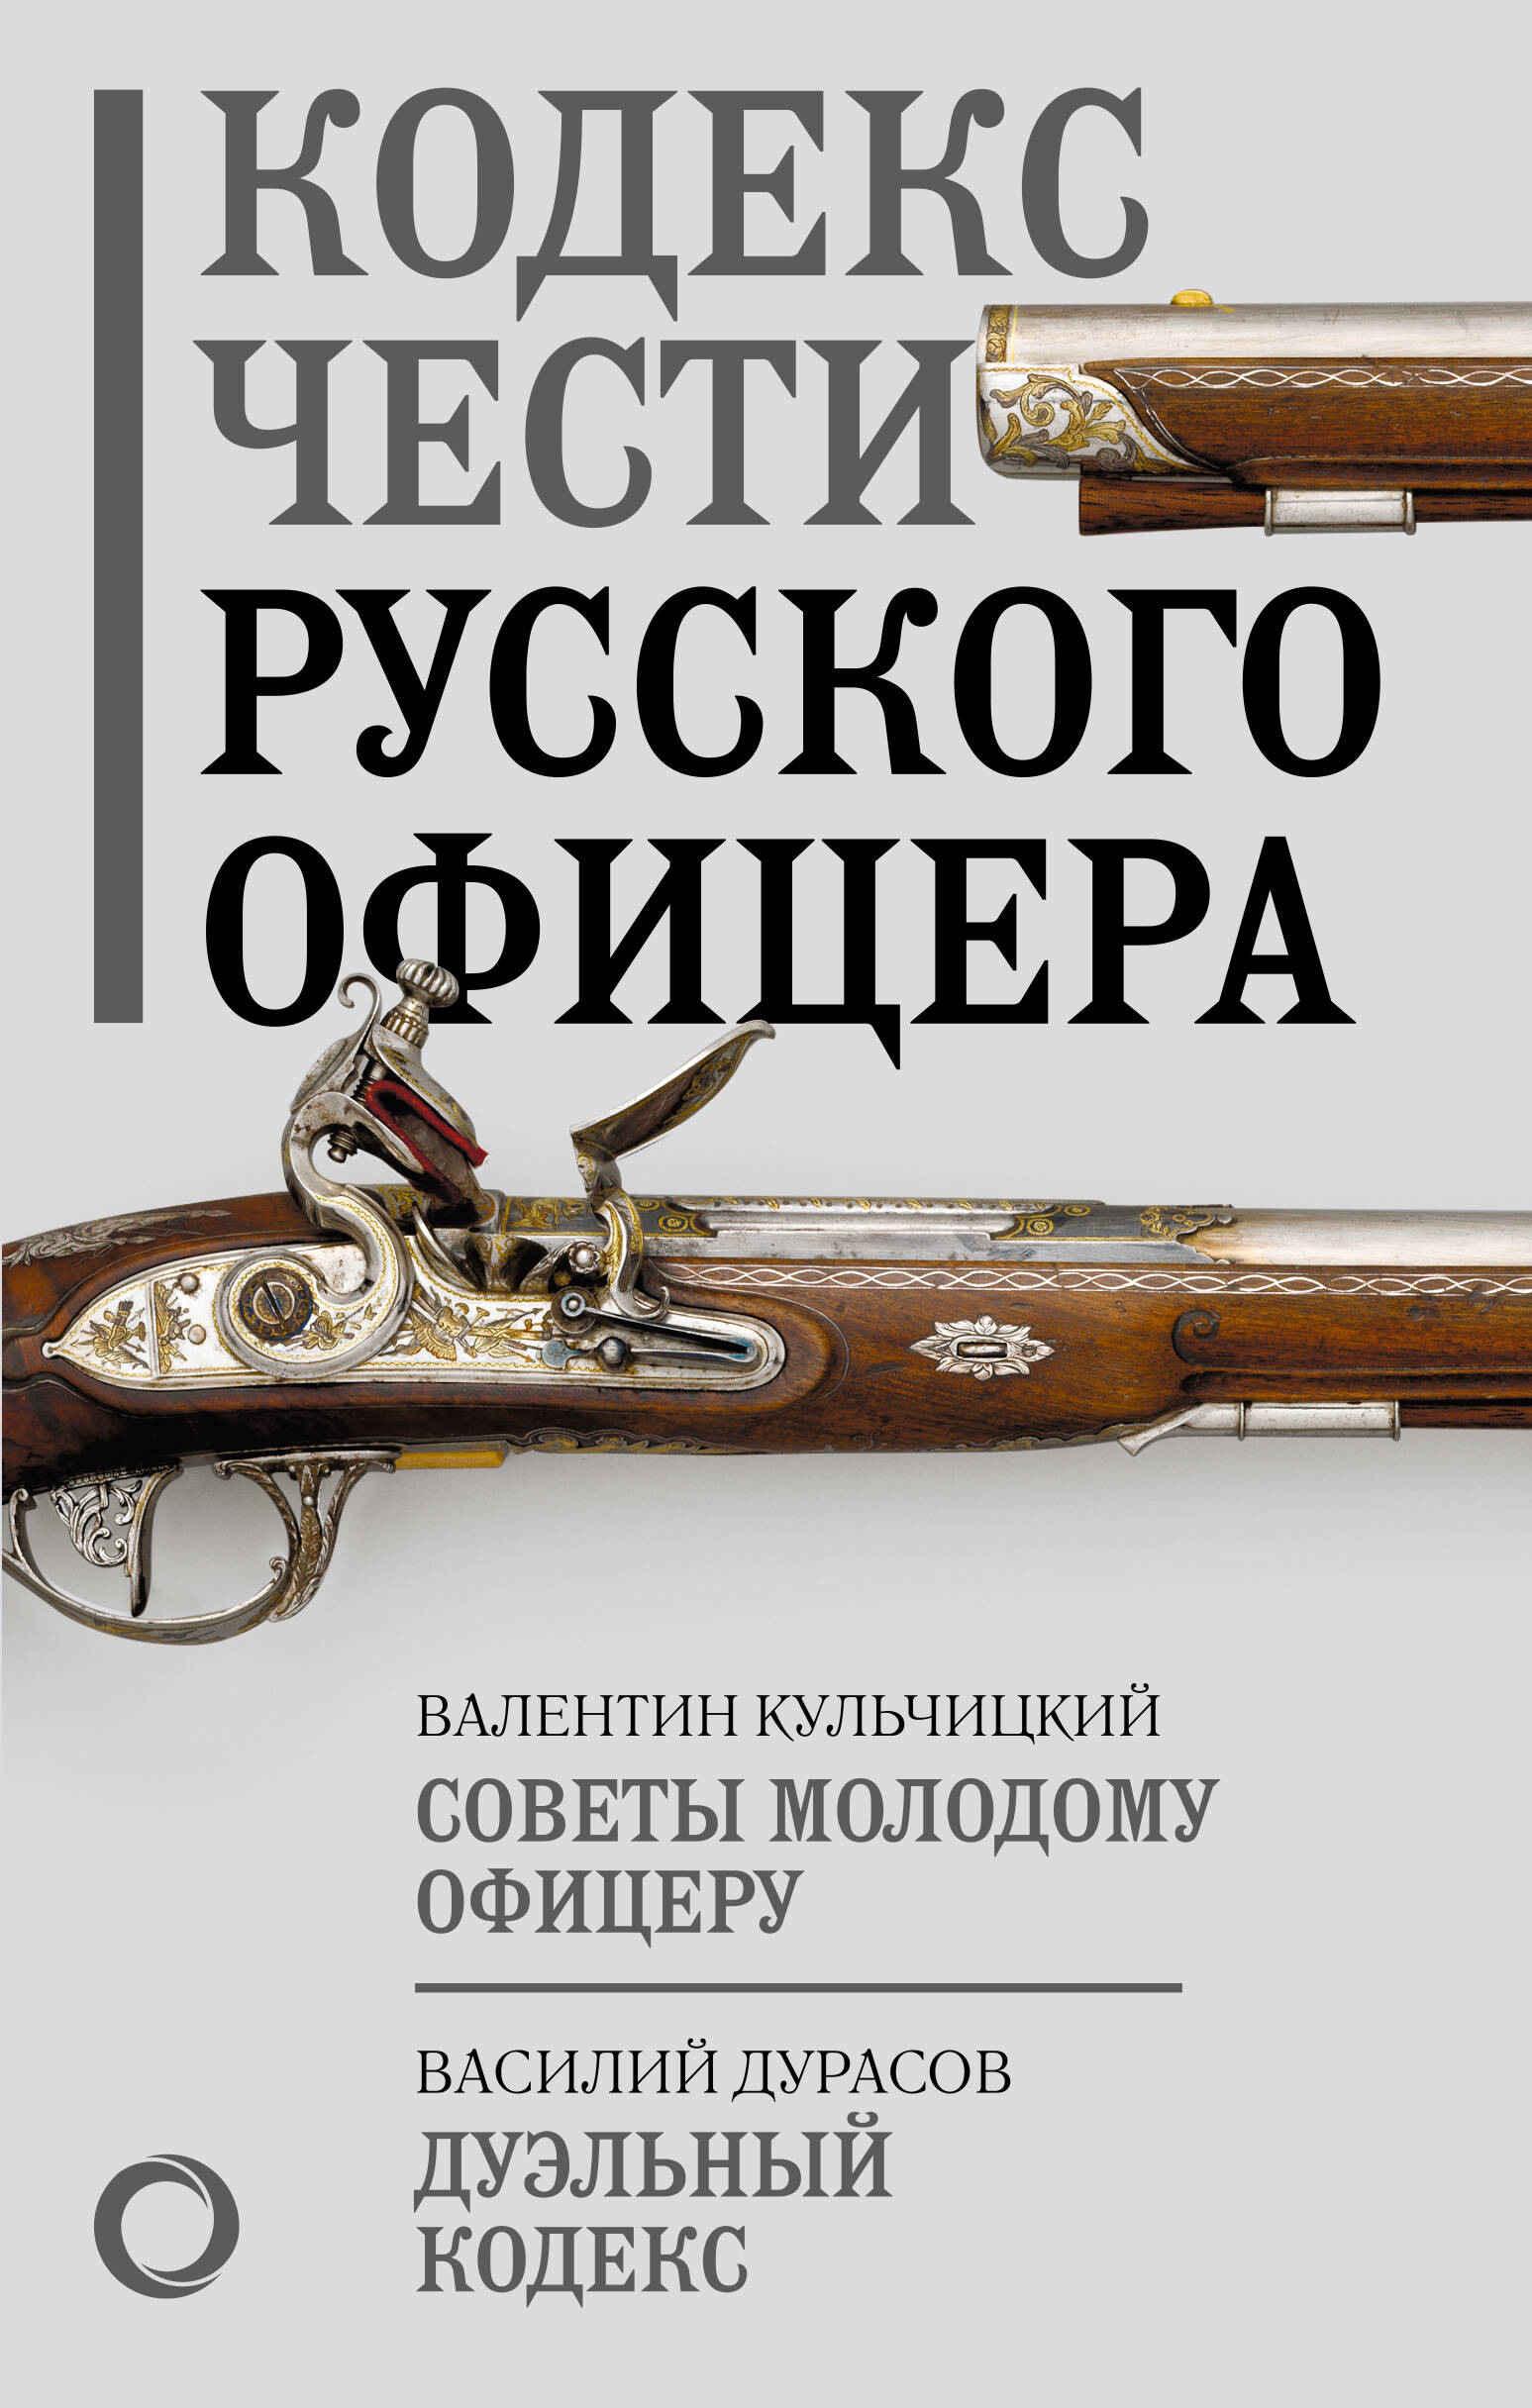 Кодекс чести русского офицера крылова е кодекс чести русского офицера